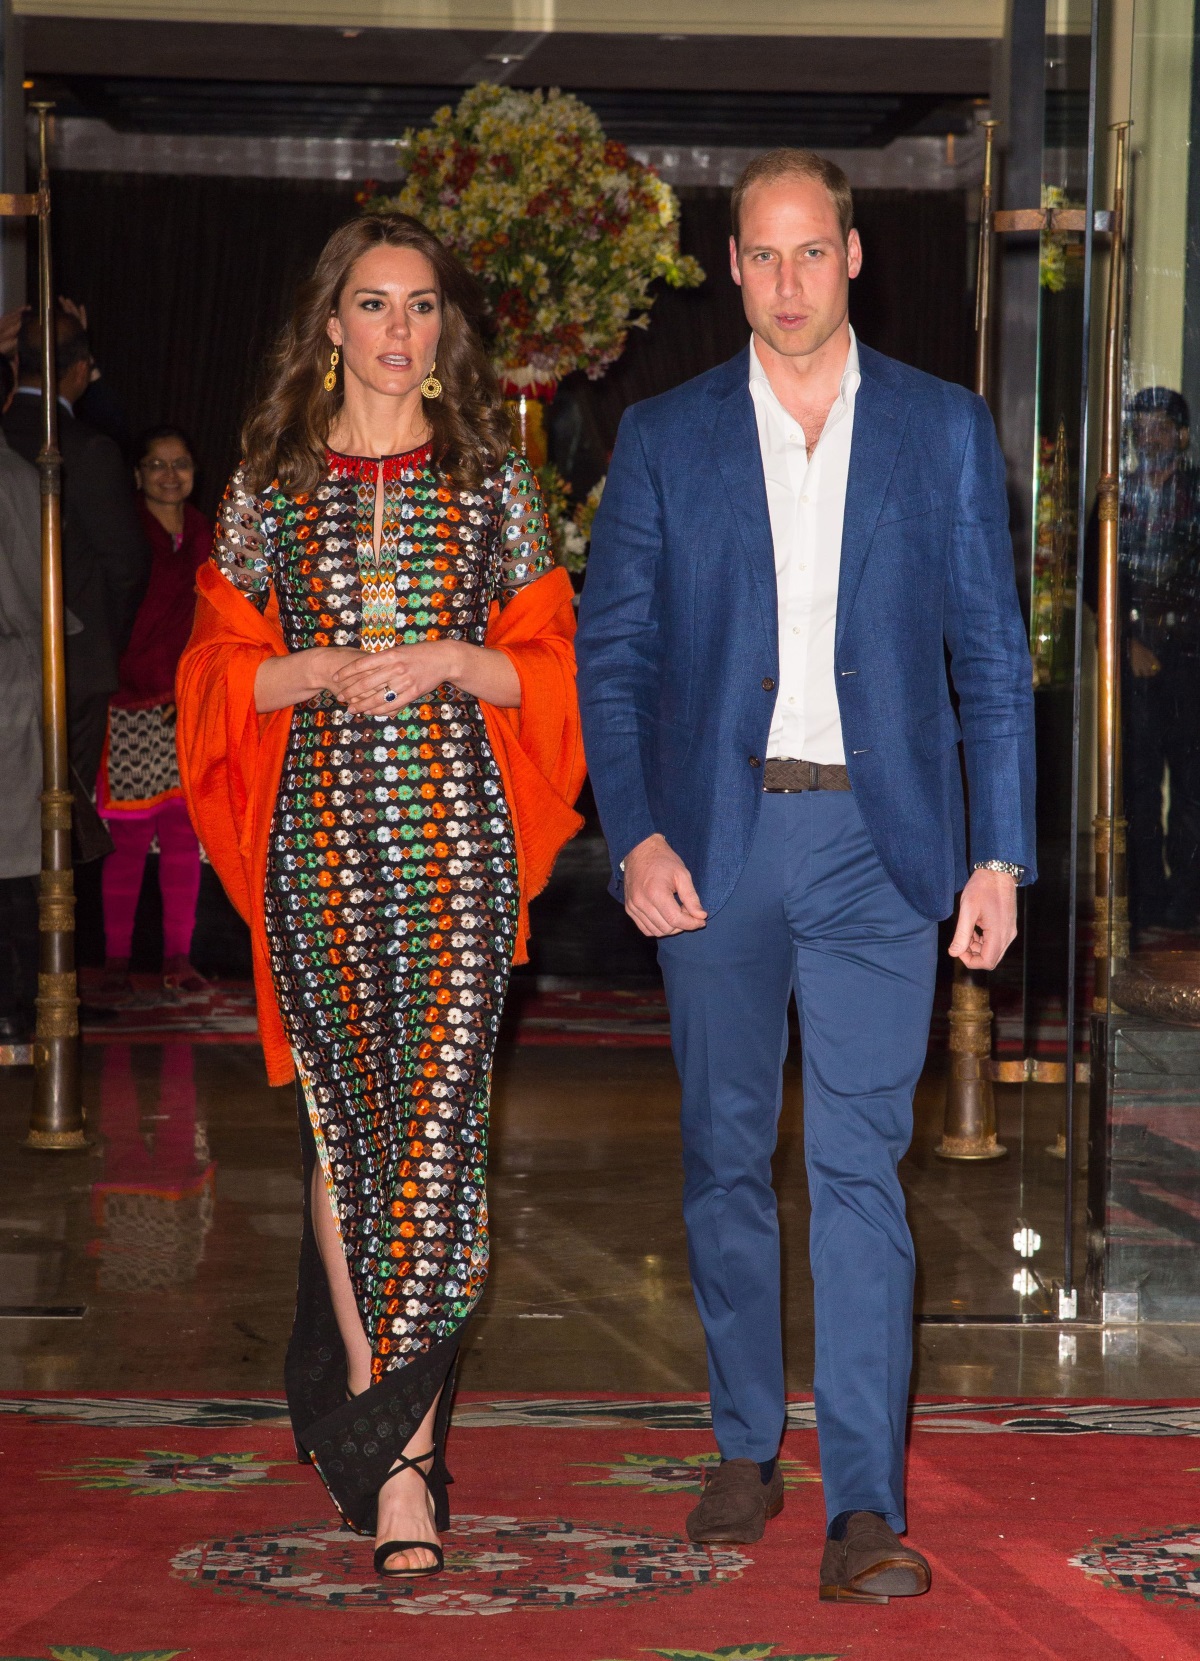 През април Кейт Мидълтън и принц Уилям бяха на едноседмично посещение в Индия и в Бутан. По време на престоя им в Южна Азия херцогинята на Кеймбридж се появи с няколко невероятни рокли, с които за пореден път причлече всиманието върху себе си